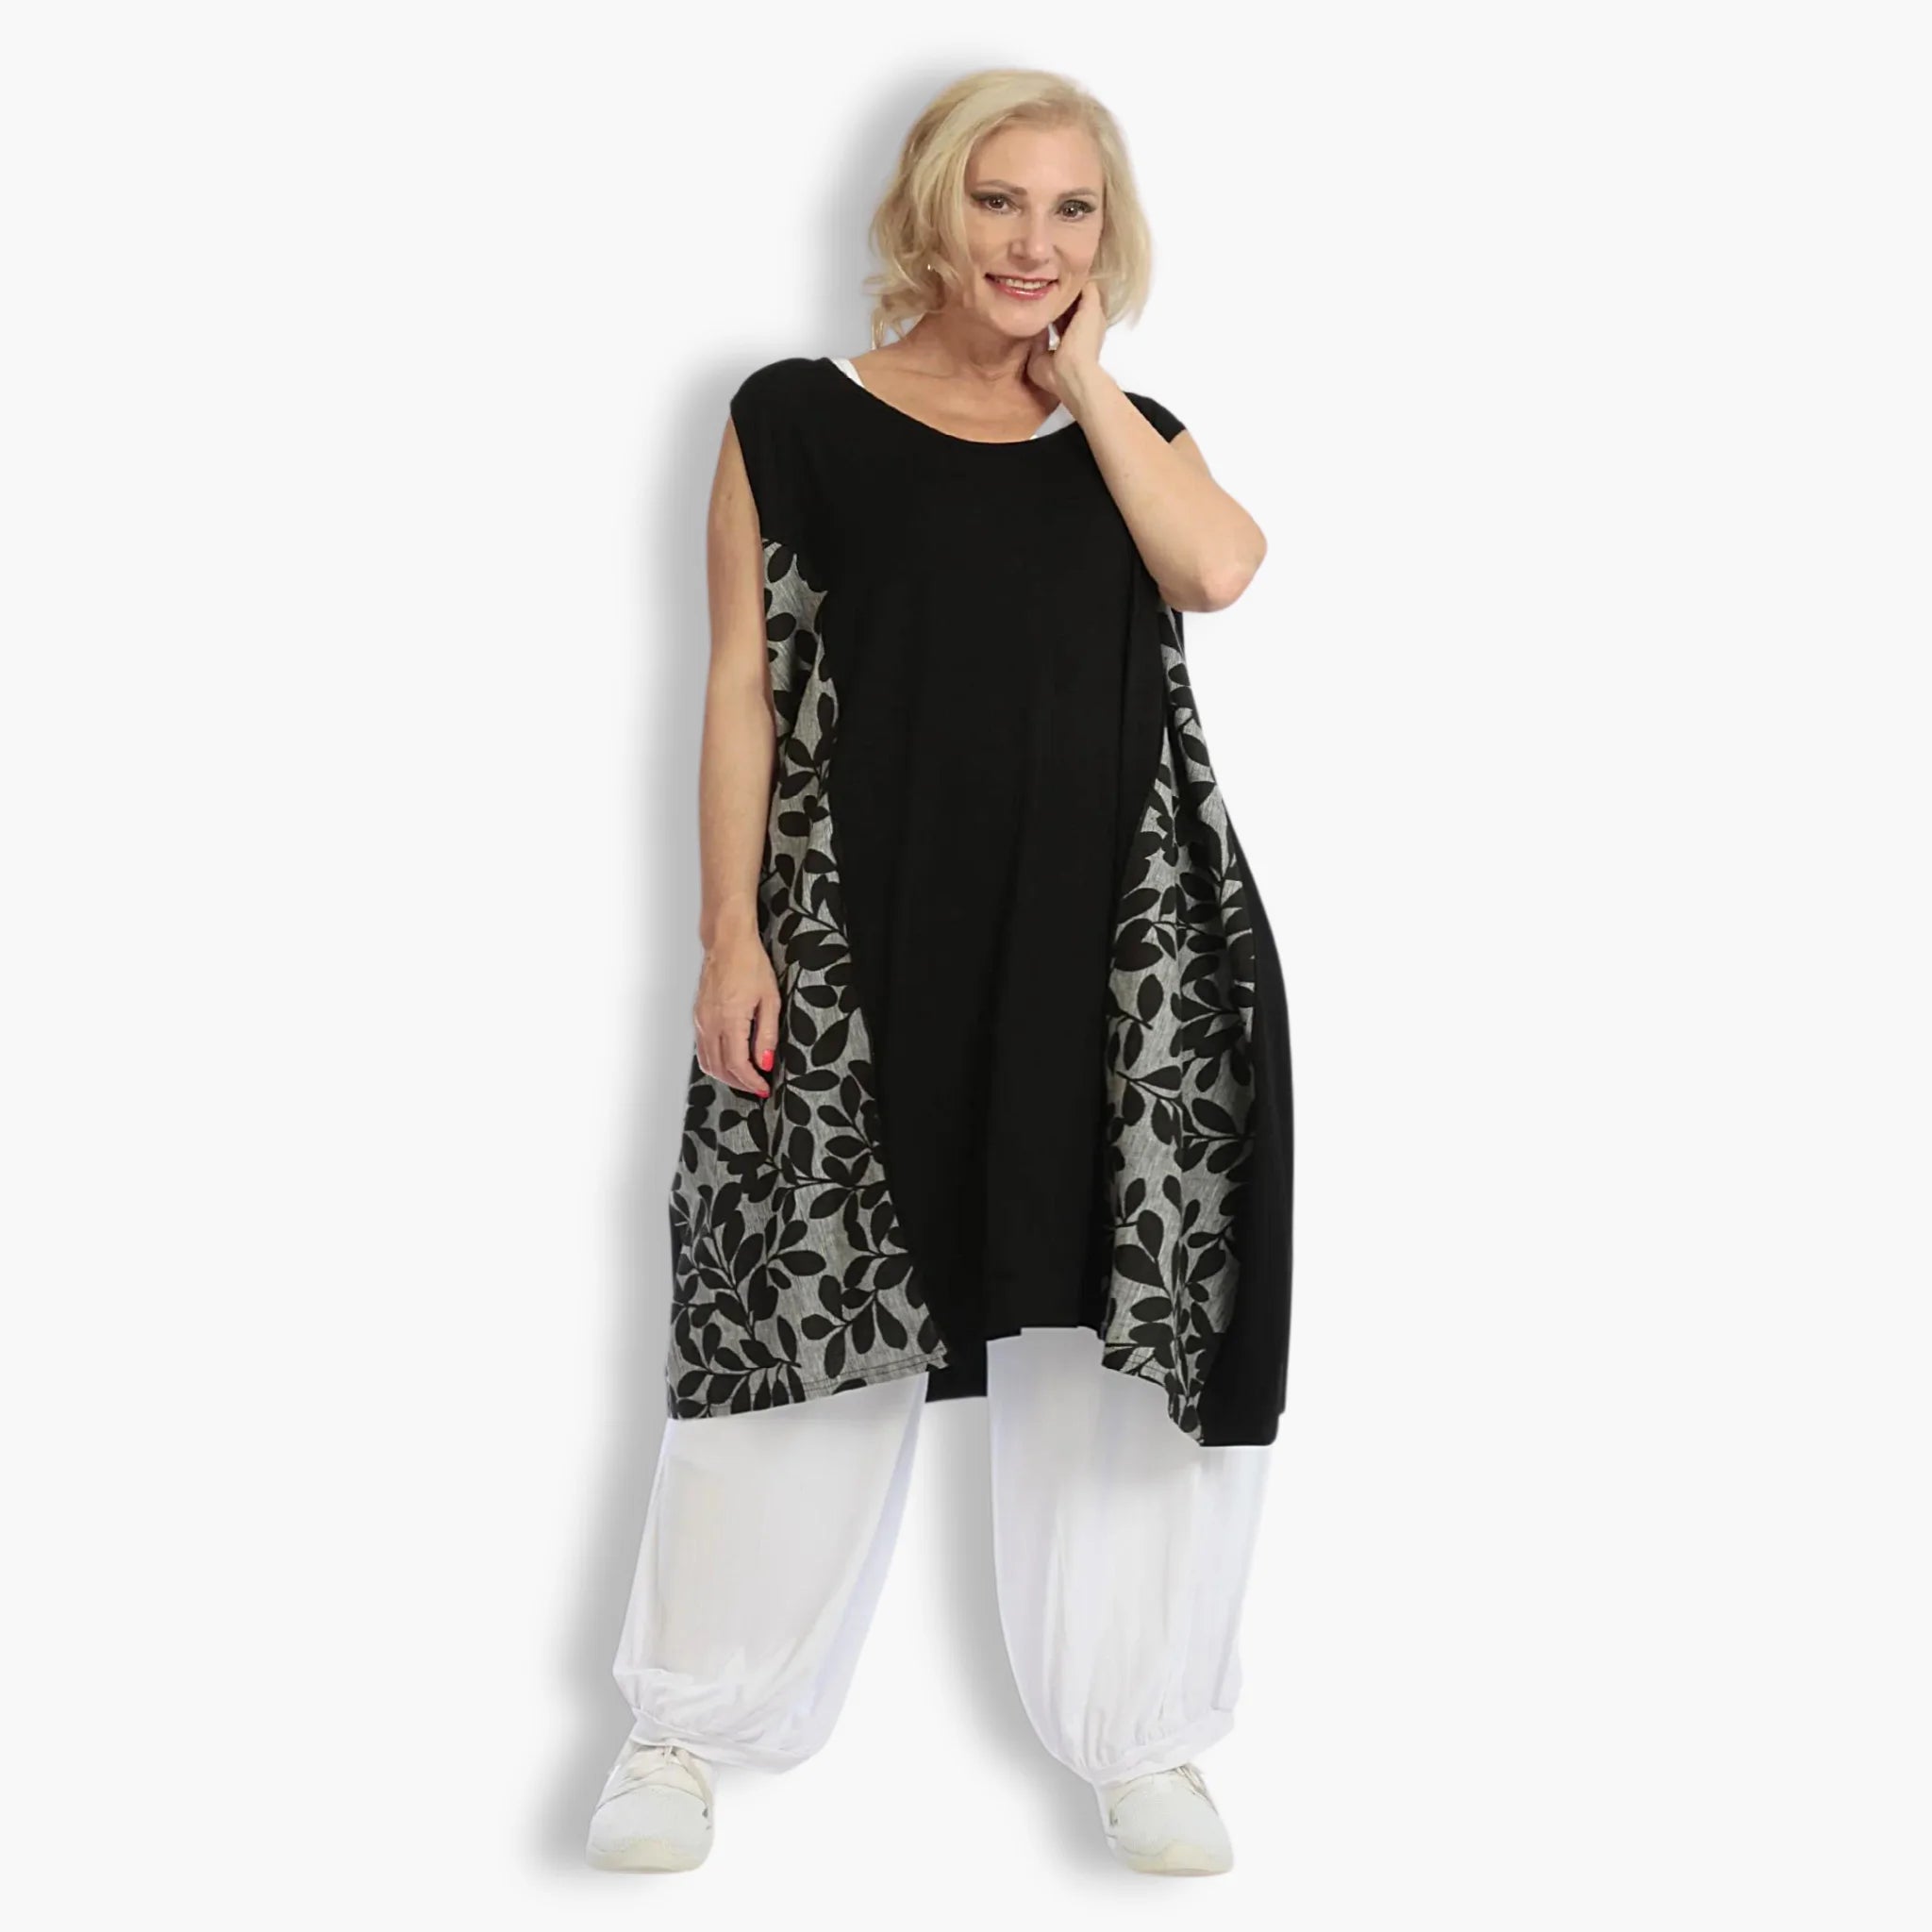 Jersey Tunika von AKH Fashion in gerader Form, 1094.06796, Schwarz-Grau mit Blumen-Muster